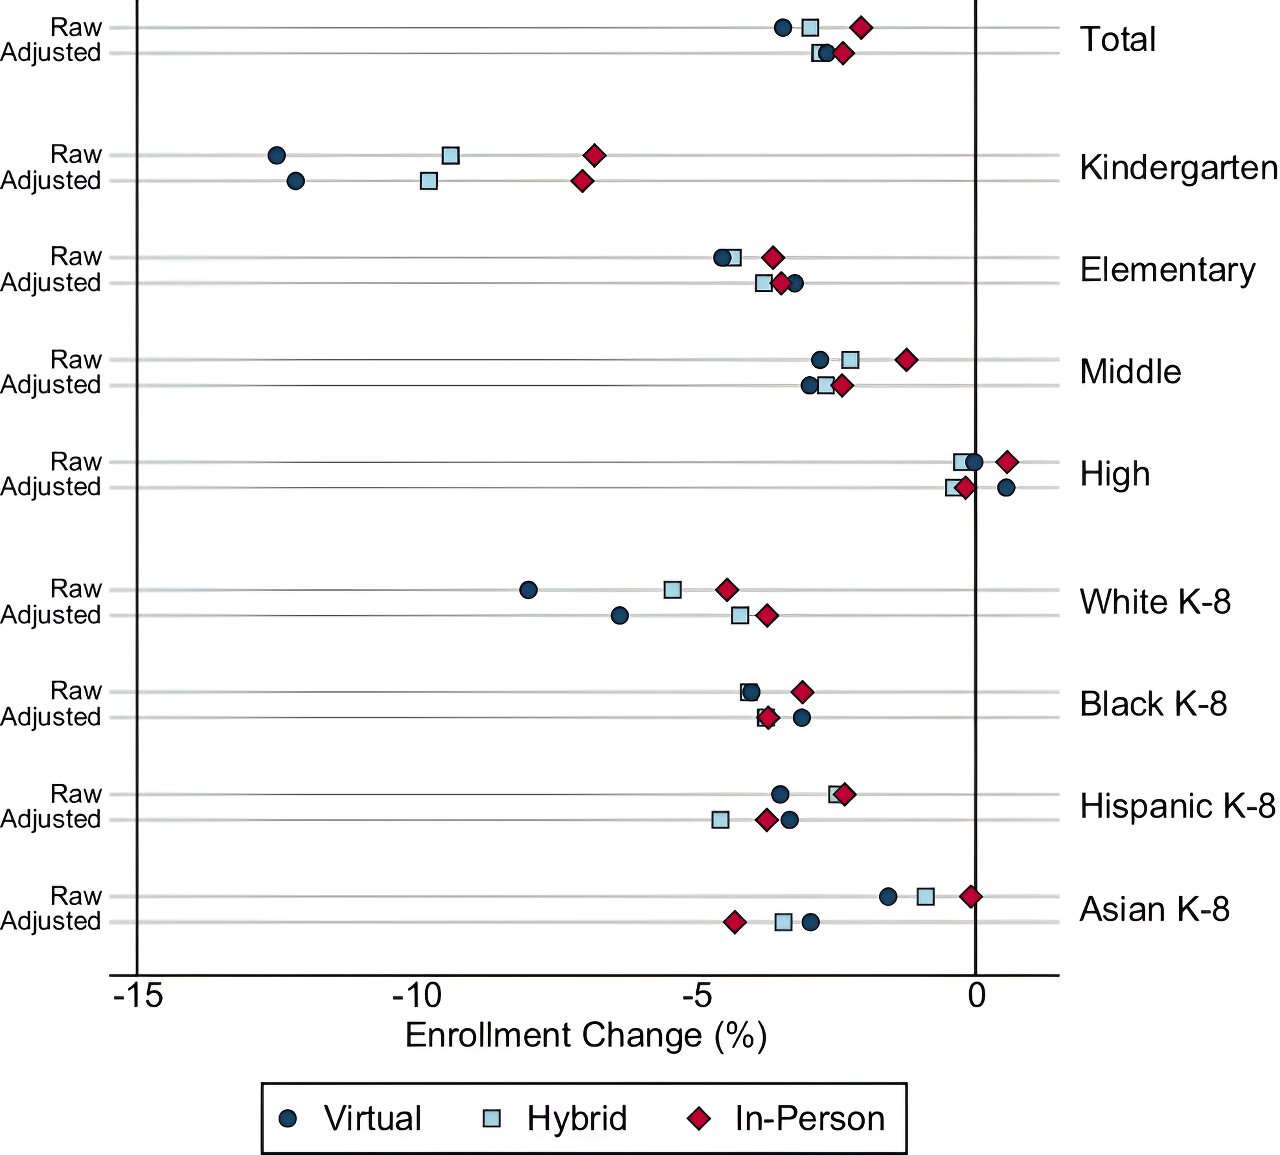 #Study reveals racial disparities in school enrollment during COVID-19